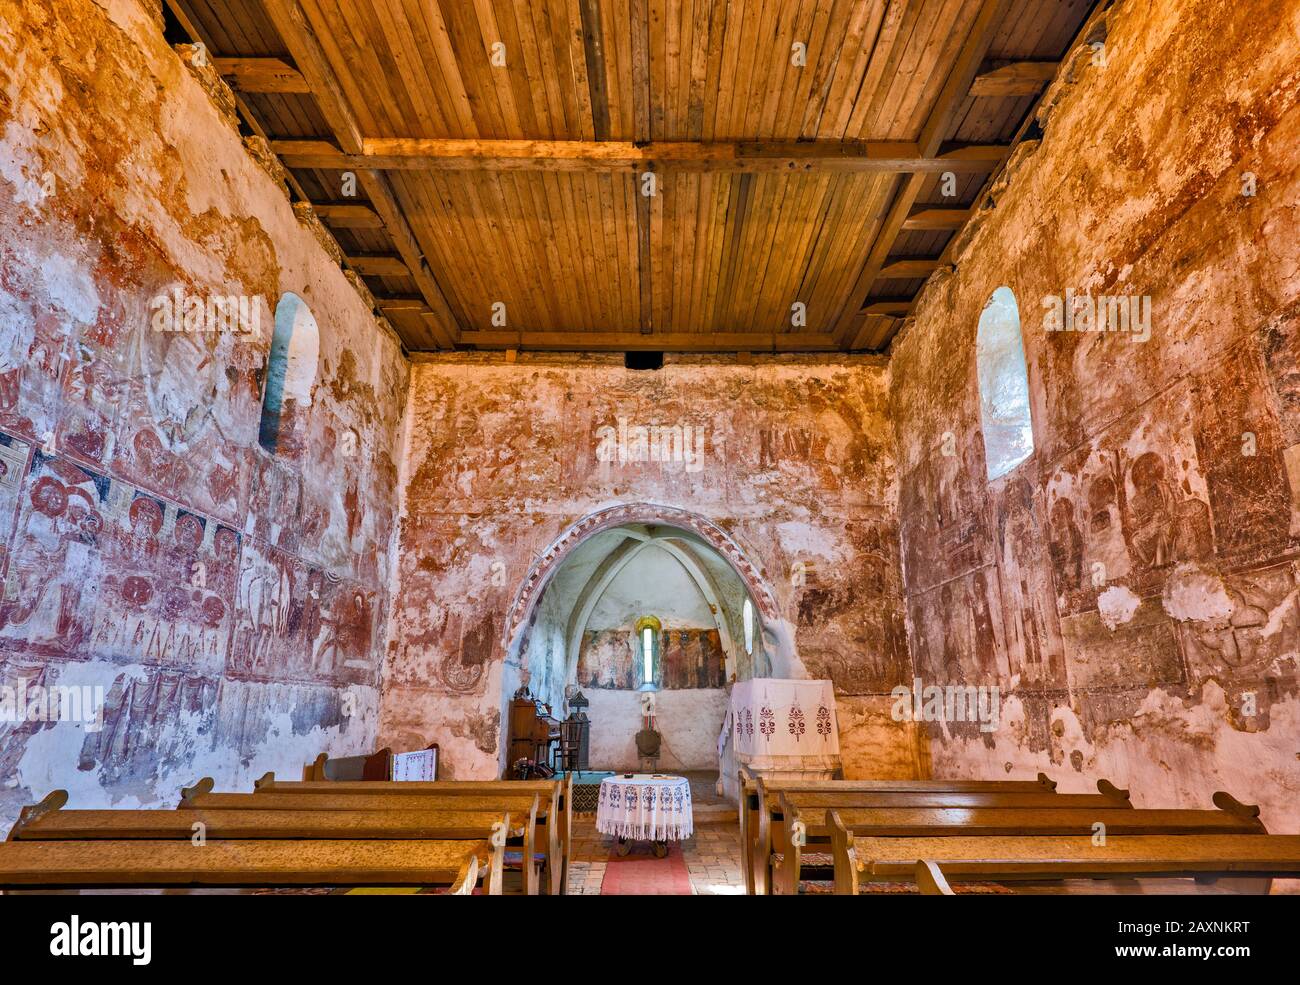 Fresques à l'église réformée calviniste hongroise, ancienne orthodoxe, 13th cent, style roman, village de Santamaria-Orlea, Transylvanie, Roumanie Banque D'Images